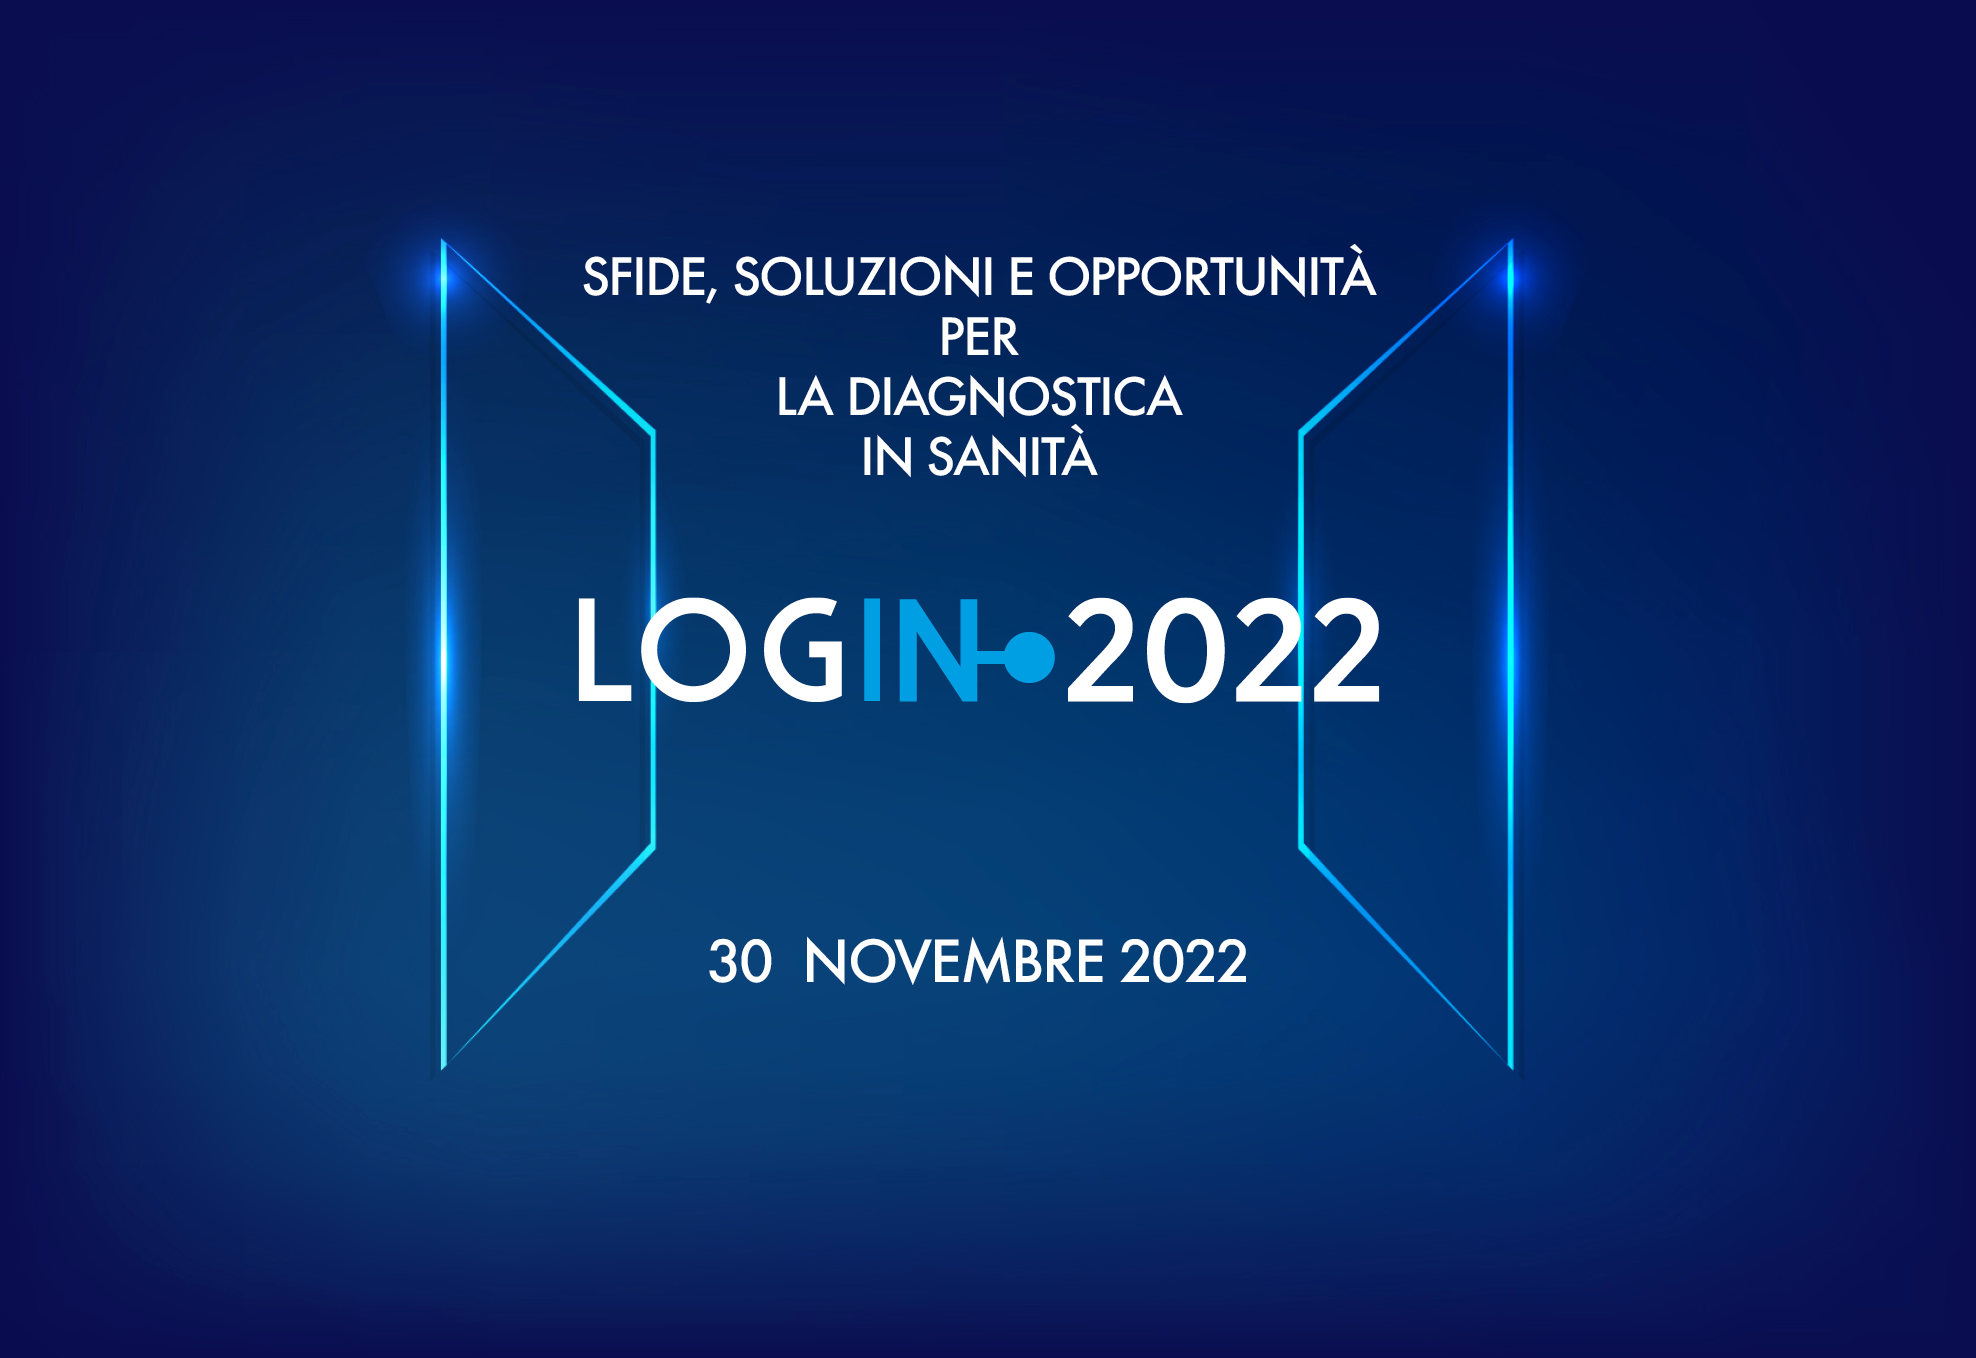 Login 2022: sfide, soluzioni e opportunità per la diagnostica in sanità, 30 novembre 2022